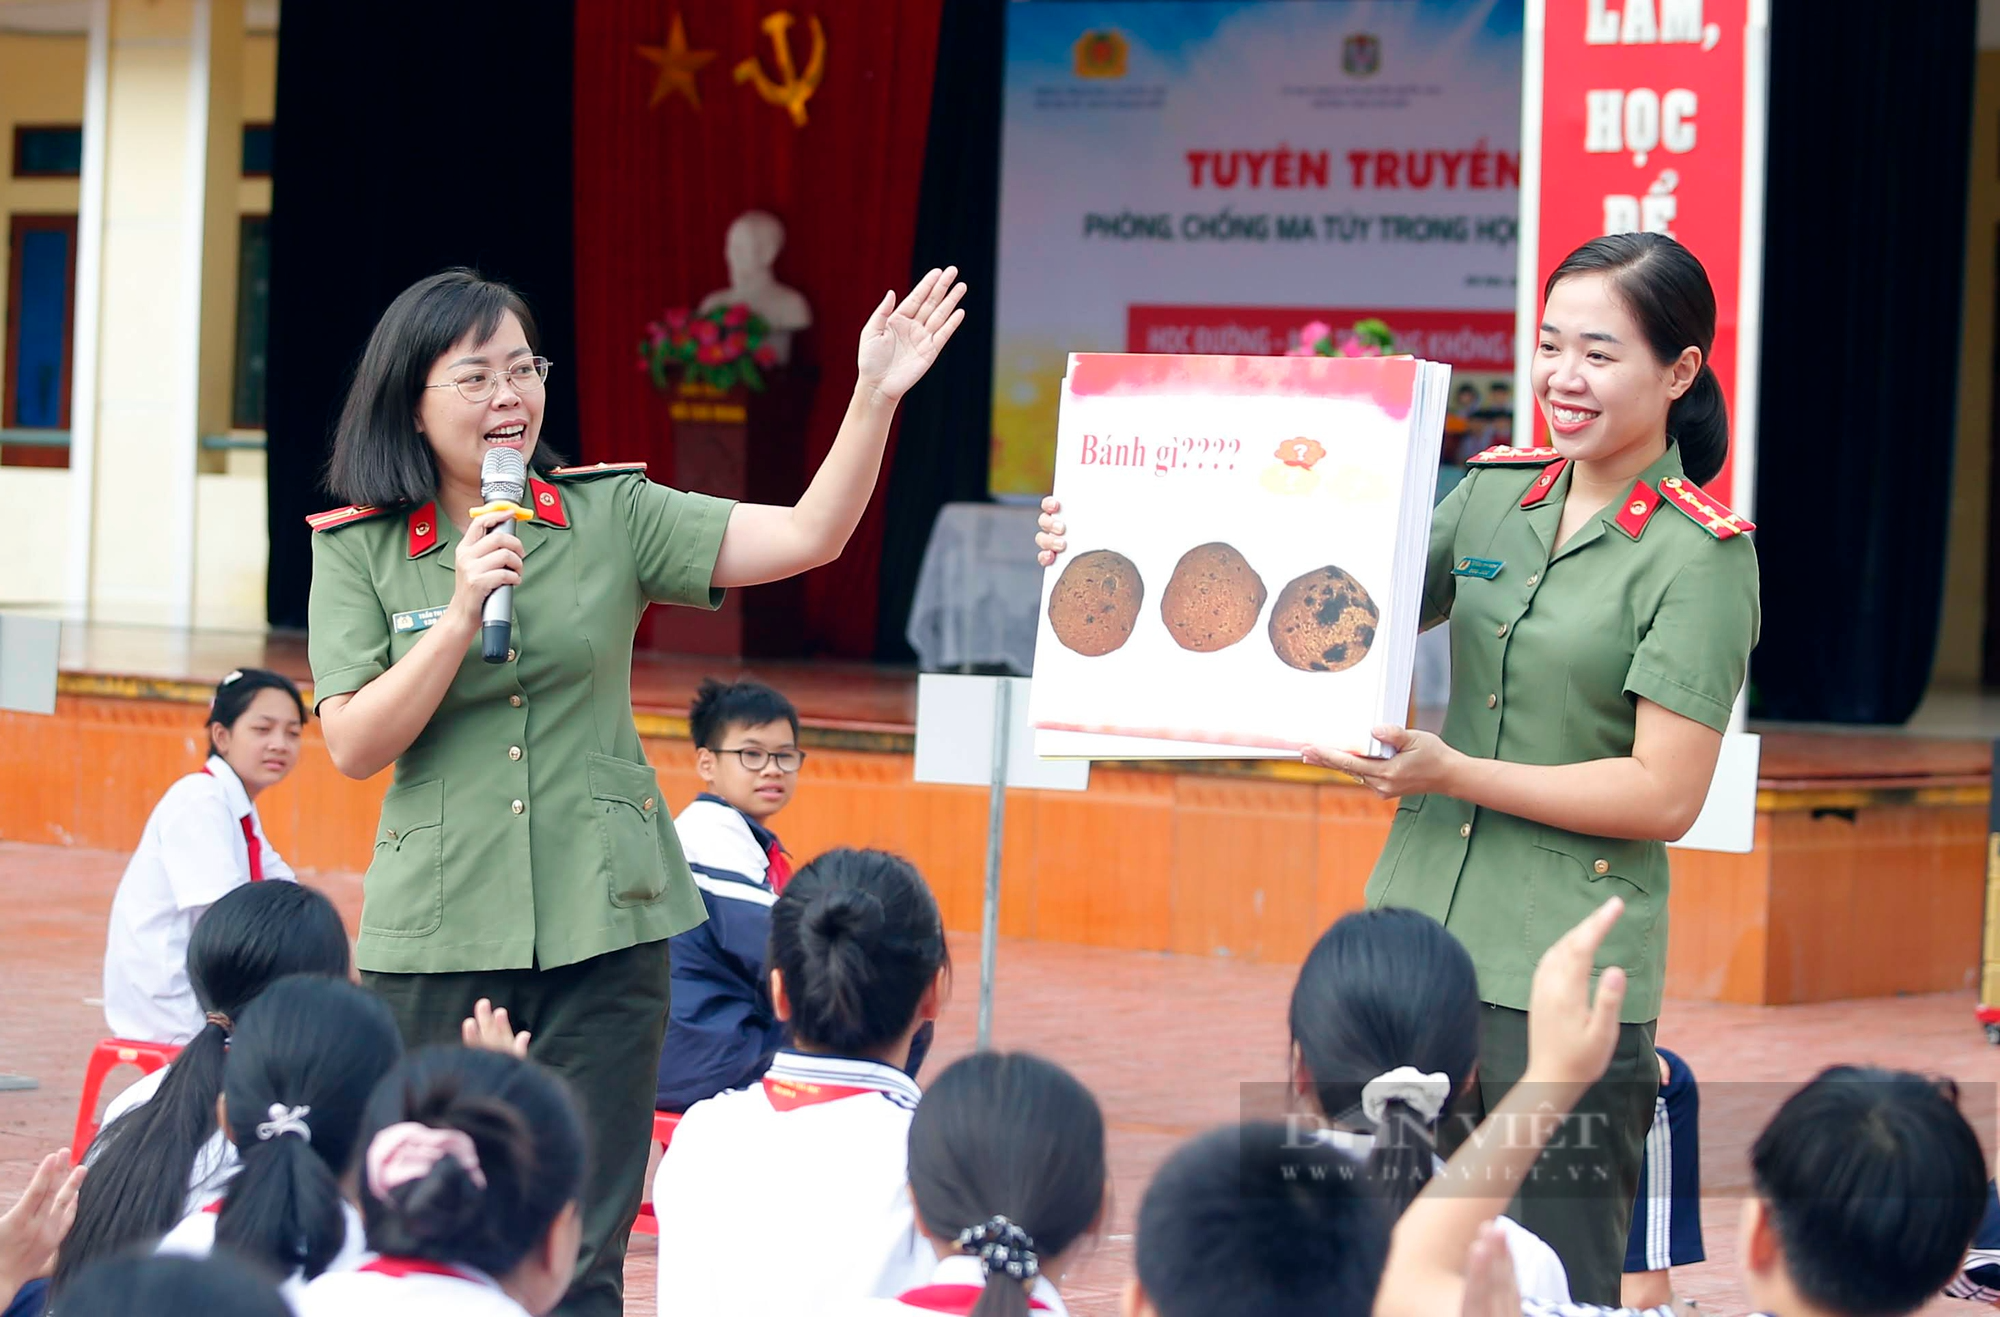 Gần 1.500 học sinh tại Hà Nội được tuyên truyền về cách nhận biết, phòng chống ma túy - Ảnh 2.